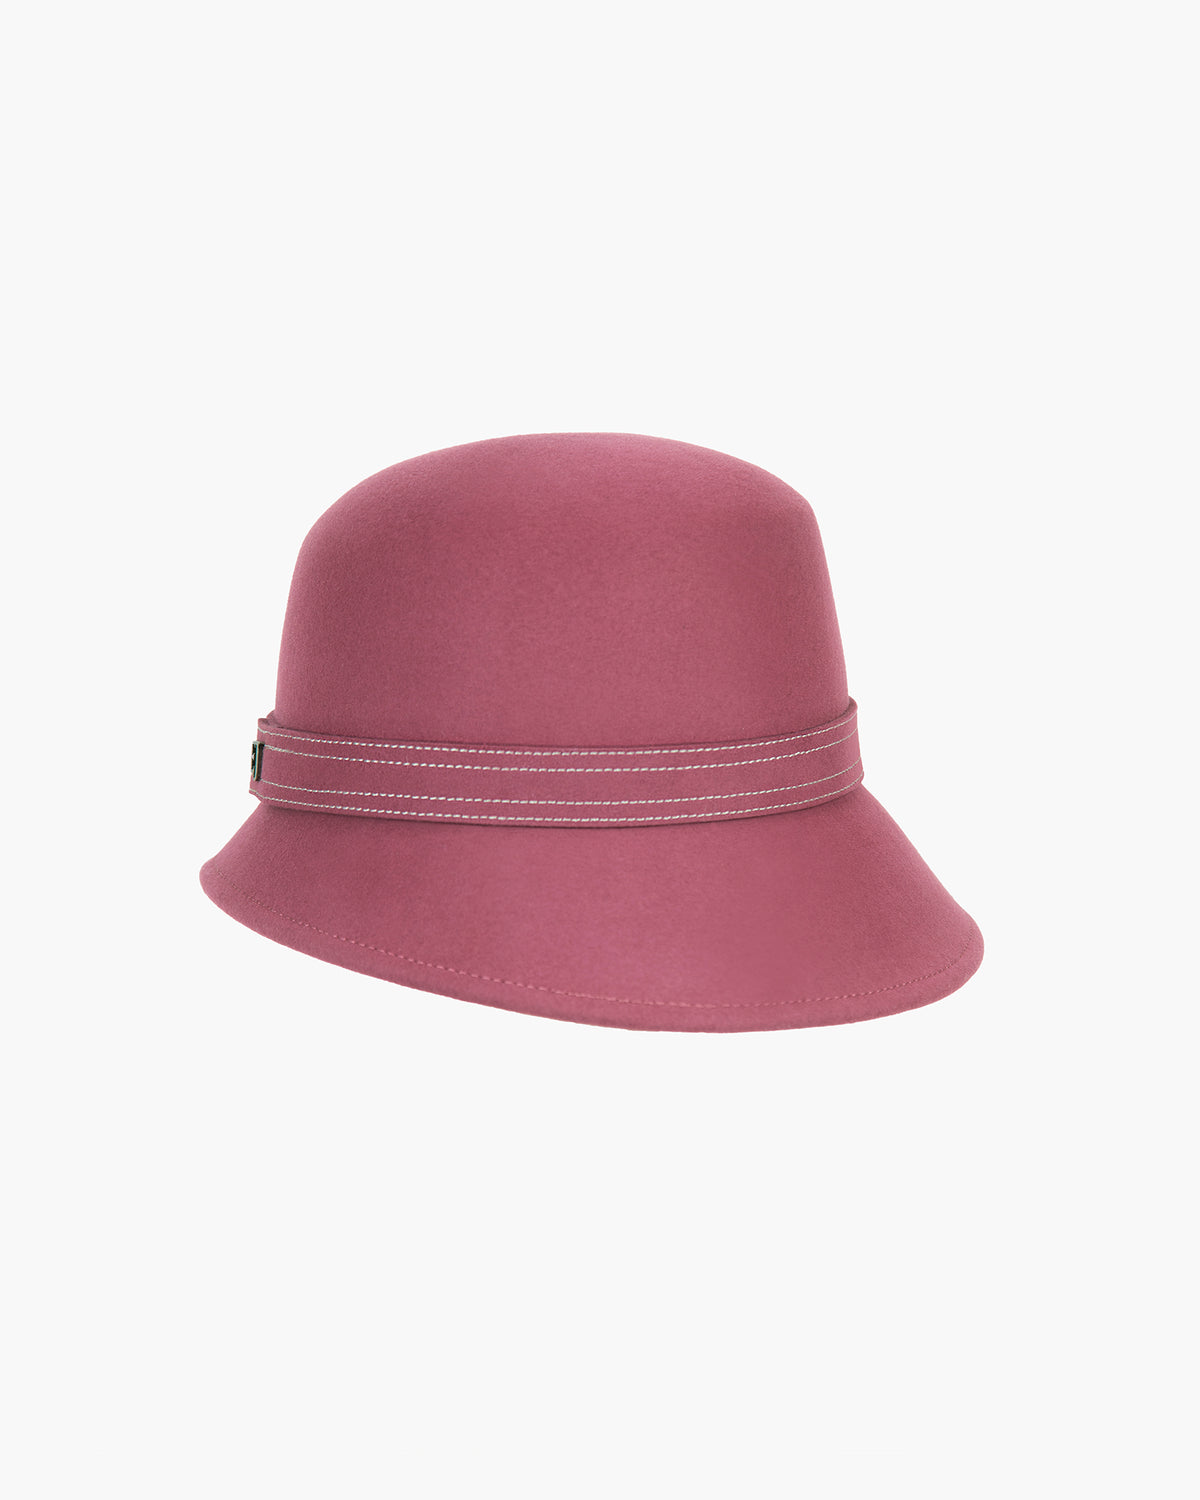 CHGBMOK Clearance Women Fashion Casua Hat Autumn And Winter Warm Hat Basin  Cap Bow Hat 